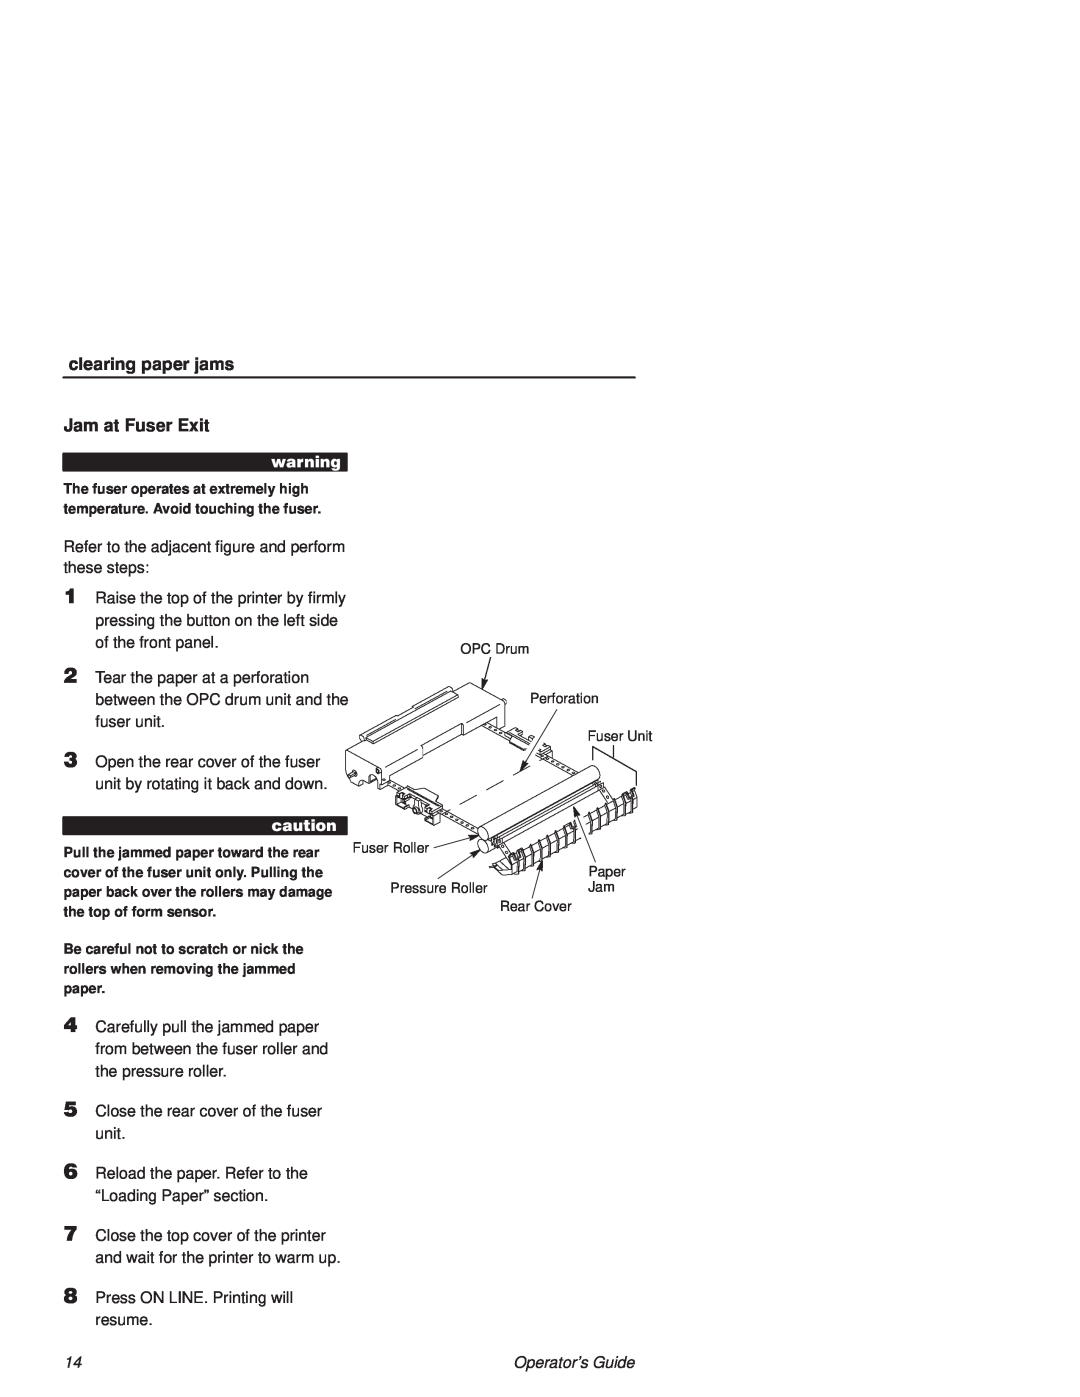 Printronix L1524 manual clearing paper jams, Jam at Fuser Exit, Perforation 